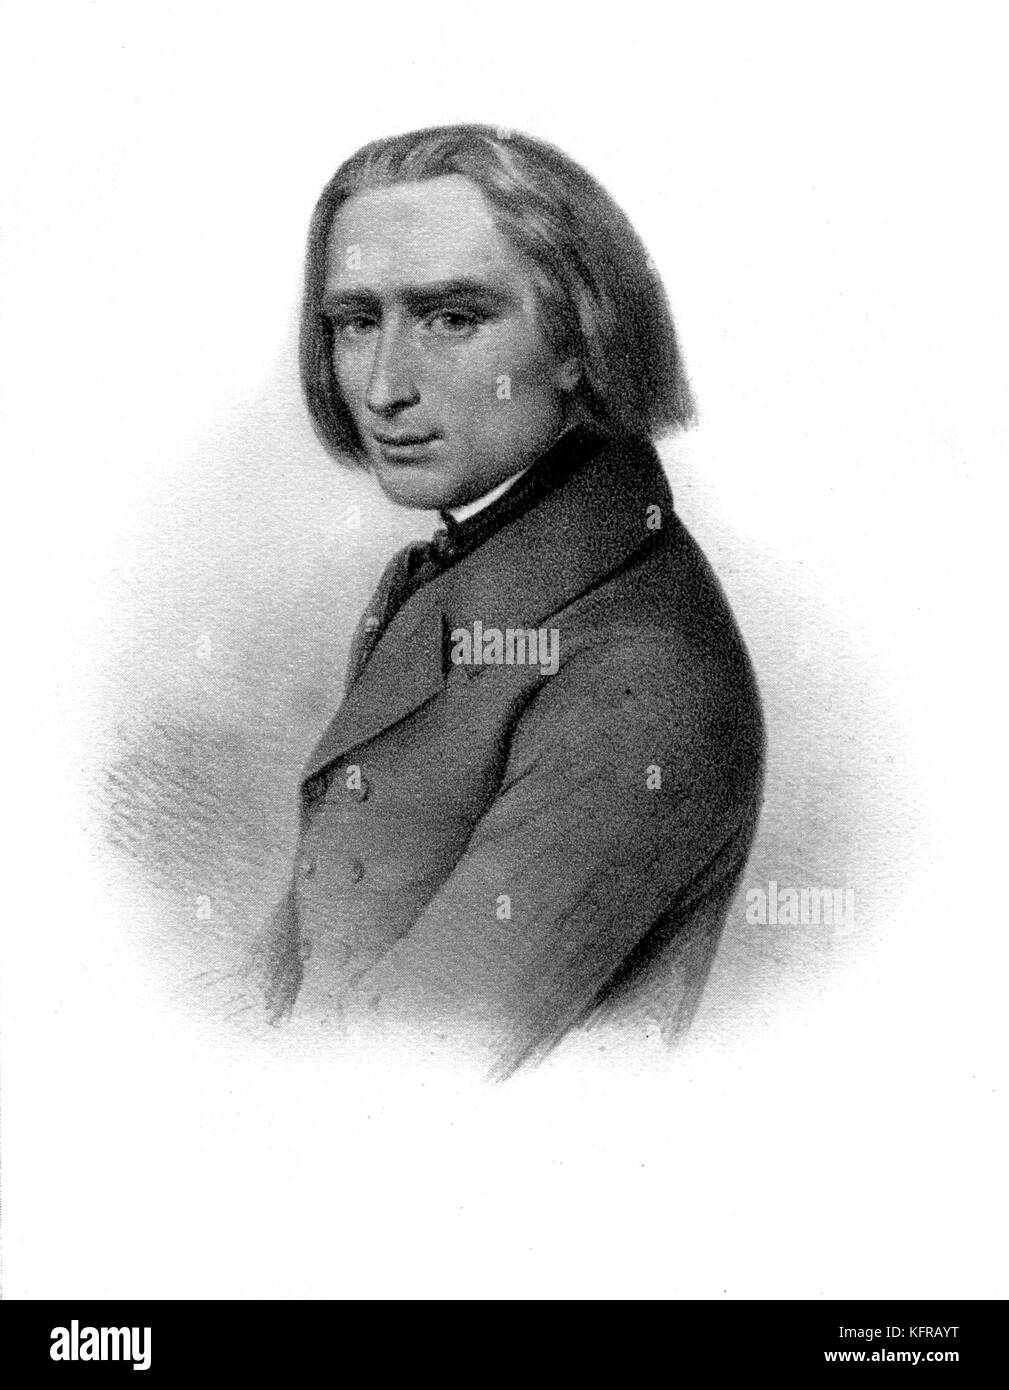 Franz Liszt - portrait, c. 1841. Compositeur et pianiste hongrois, 22 octobre 1811 - 31 juillet 1886. Banque D'Images